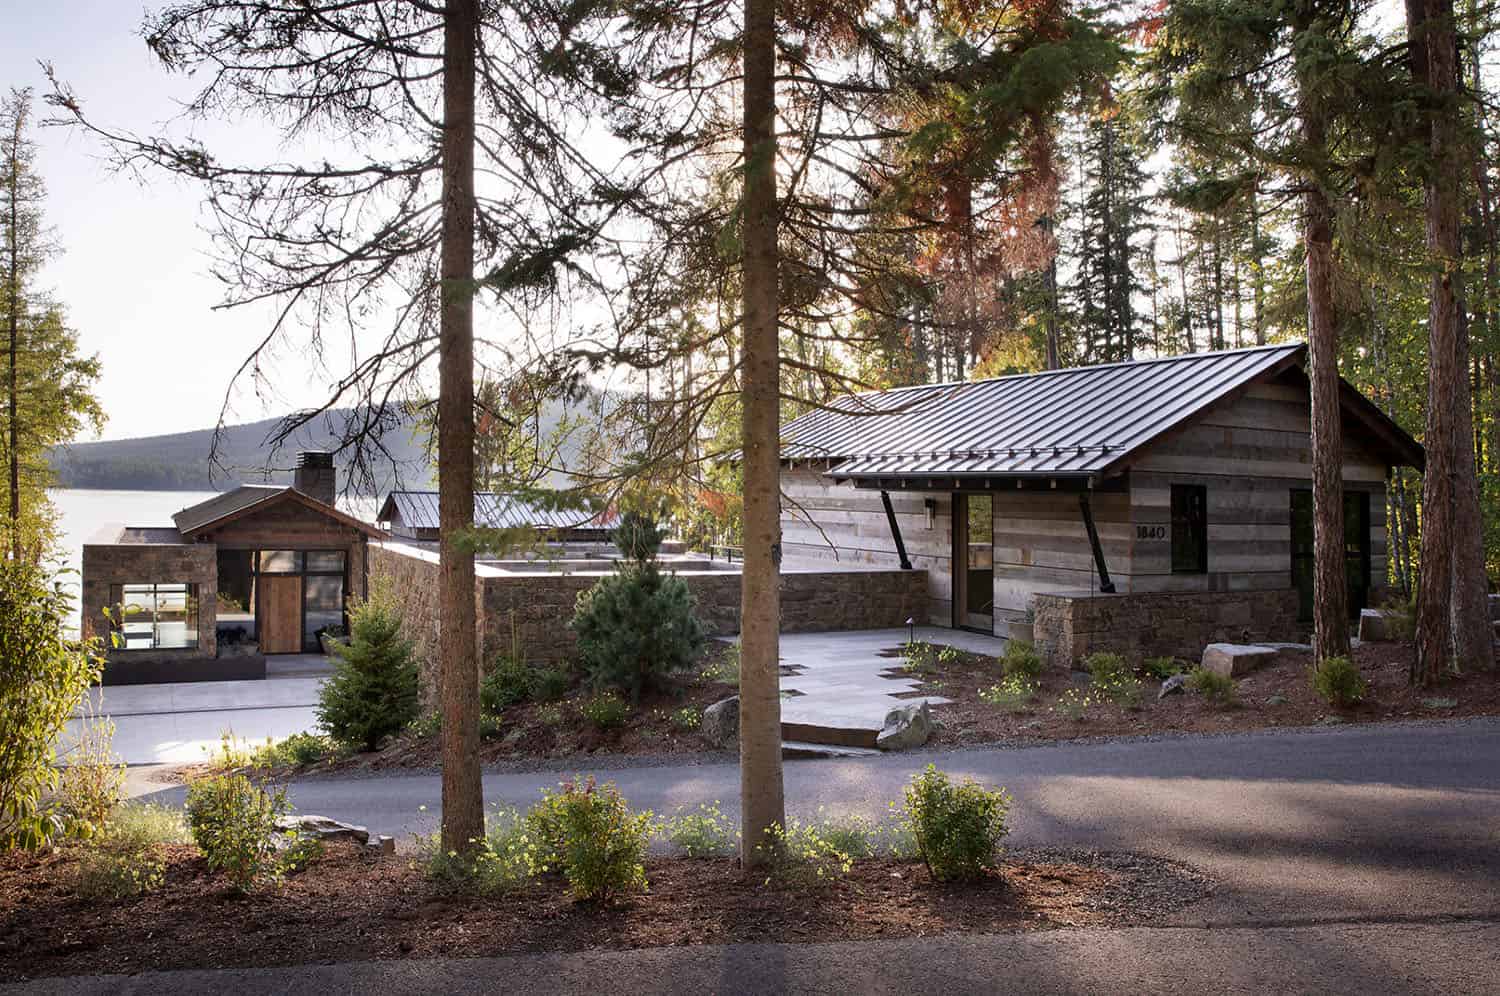 mountain-modern-lake-house-exterior